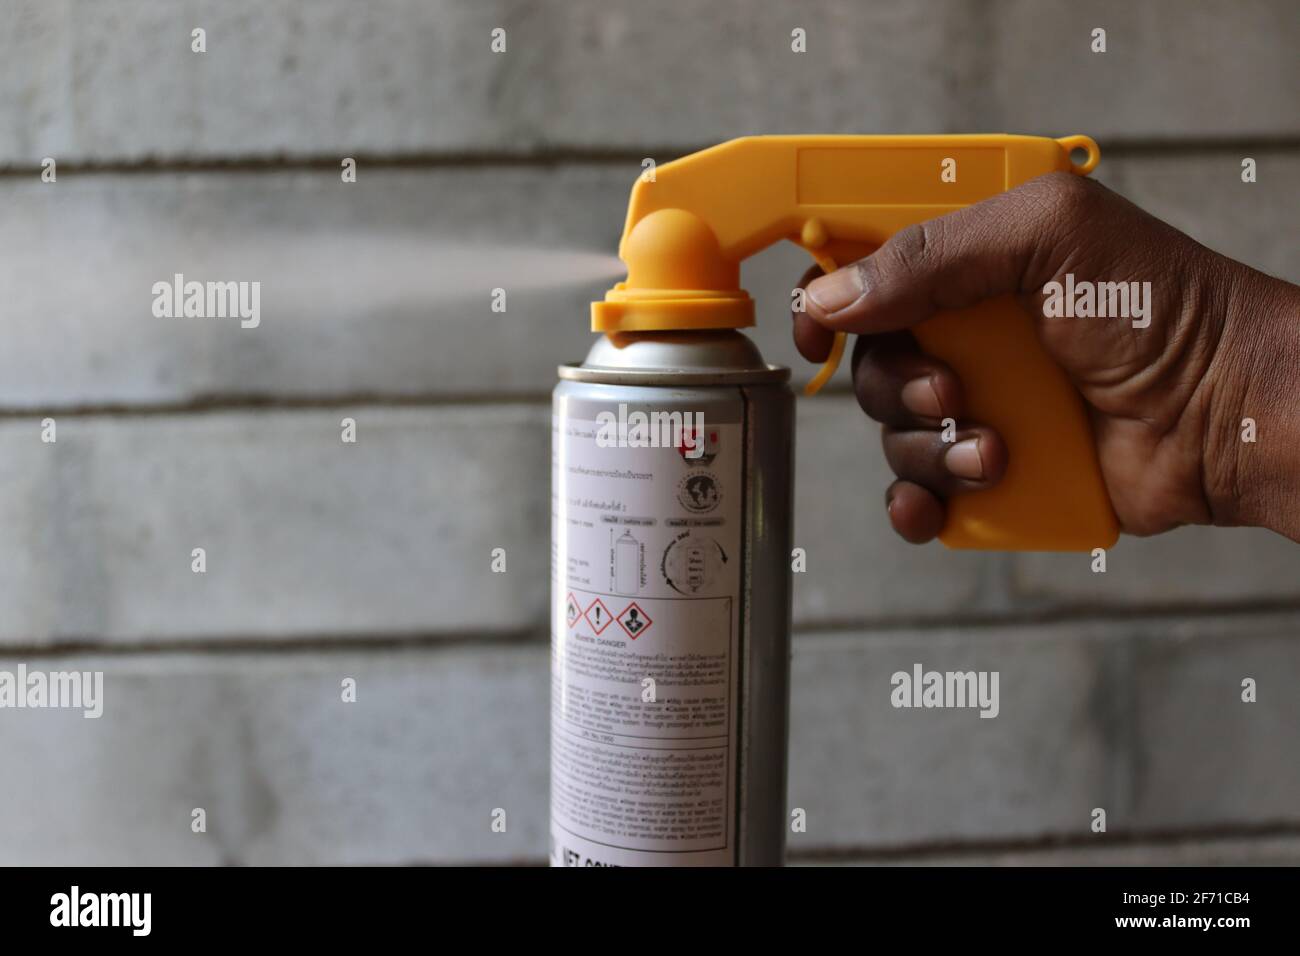 Spruzzare una bomboletta con un accessorio che aiuta a migliorare le attività di irrorazione. Foto Stock